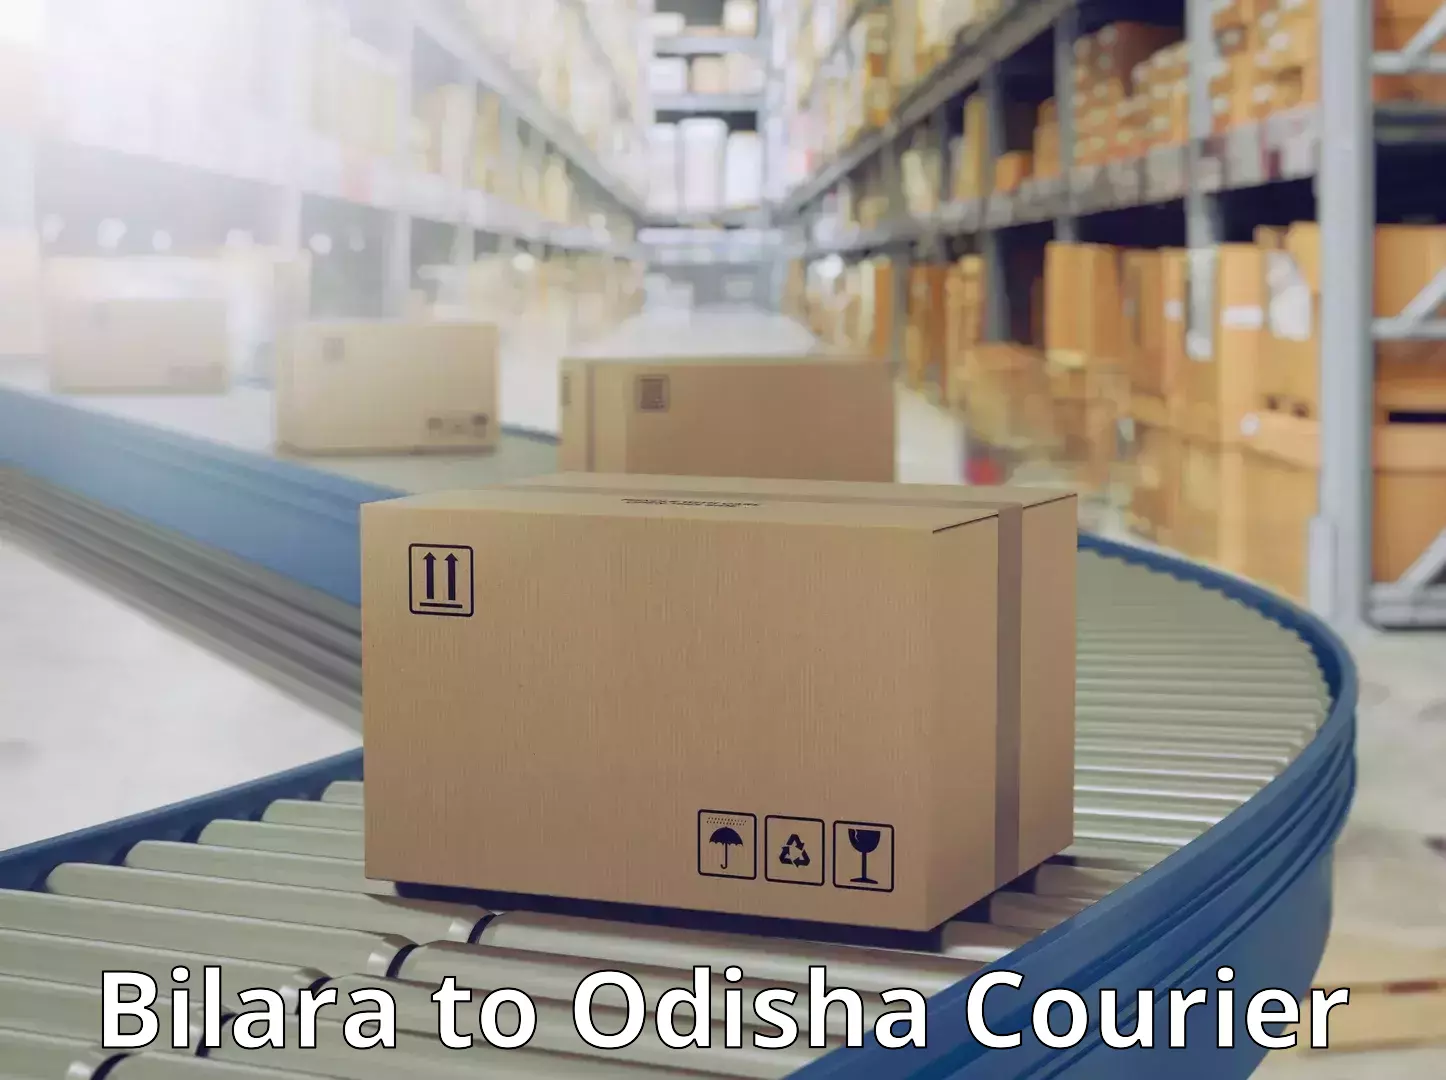 High-capacity shipping options Bilara to Mohana